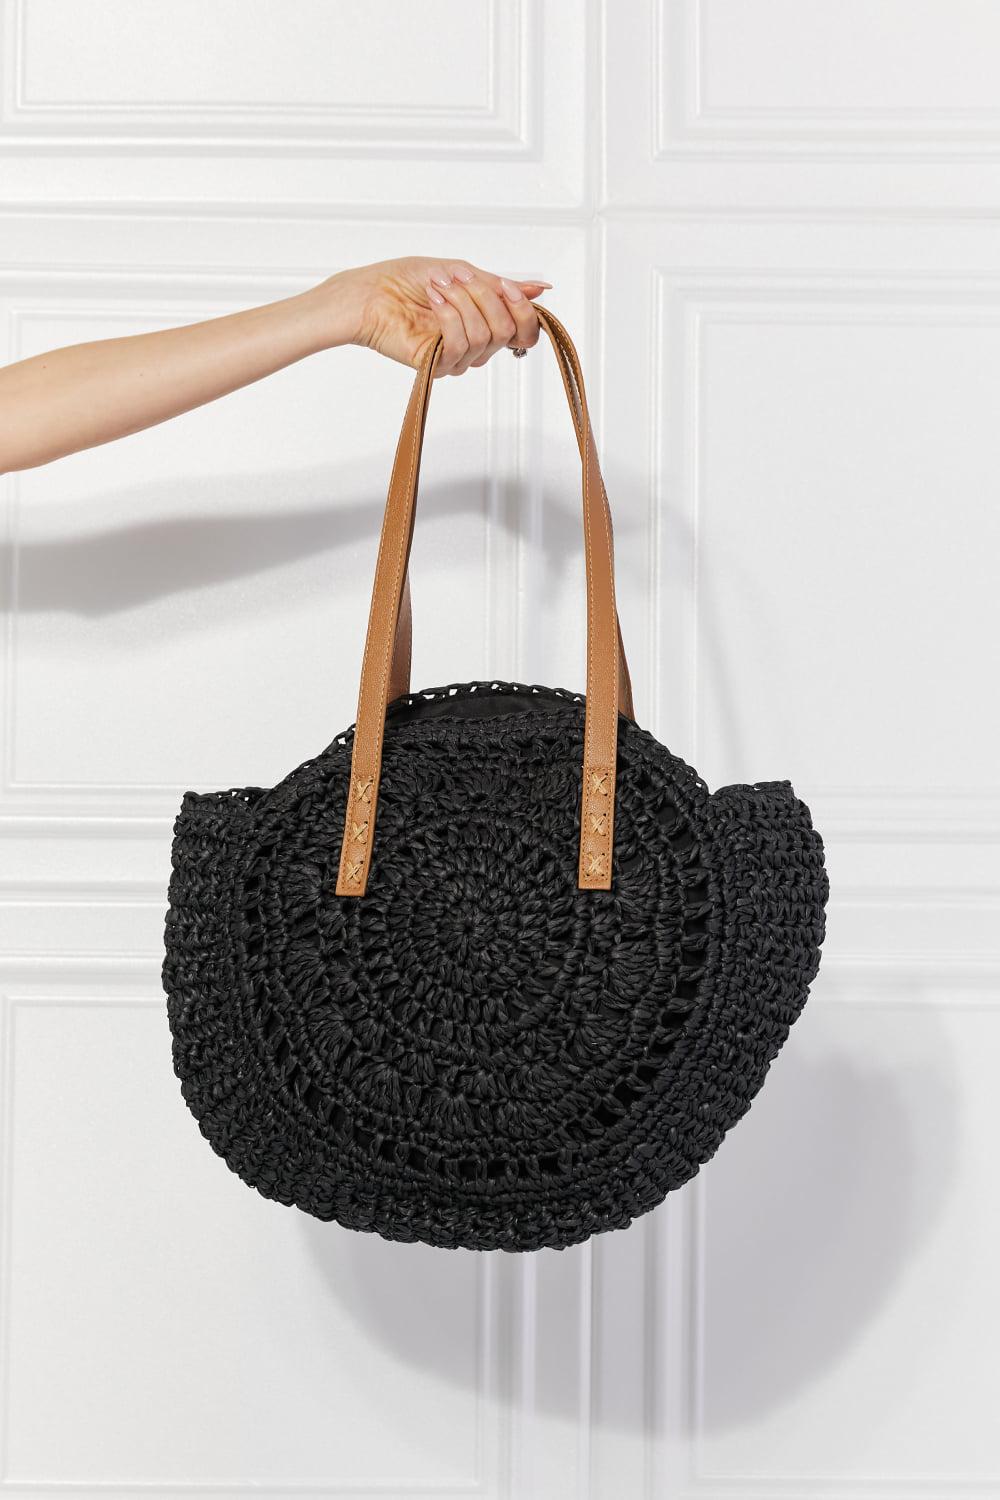 Justin Taylor C'est La Vie Crochet Handbag in Black BLUE ZONE PLANET